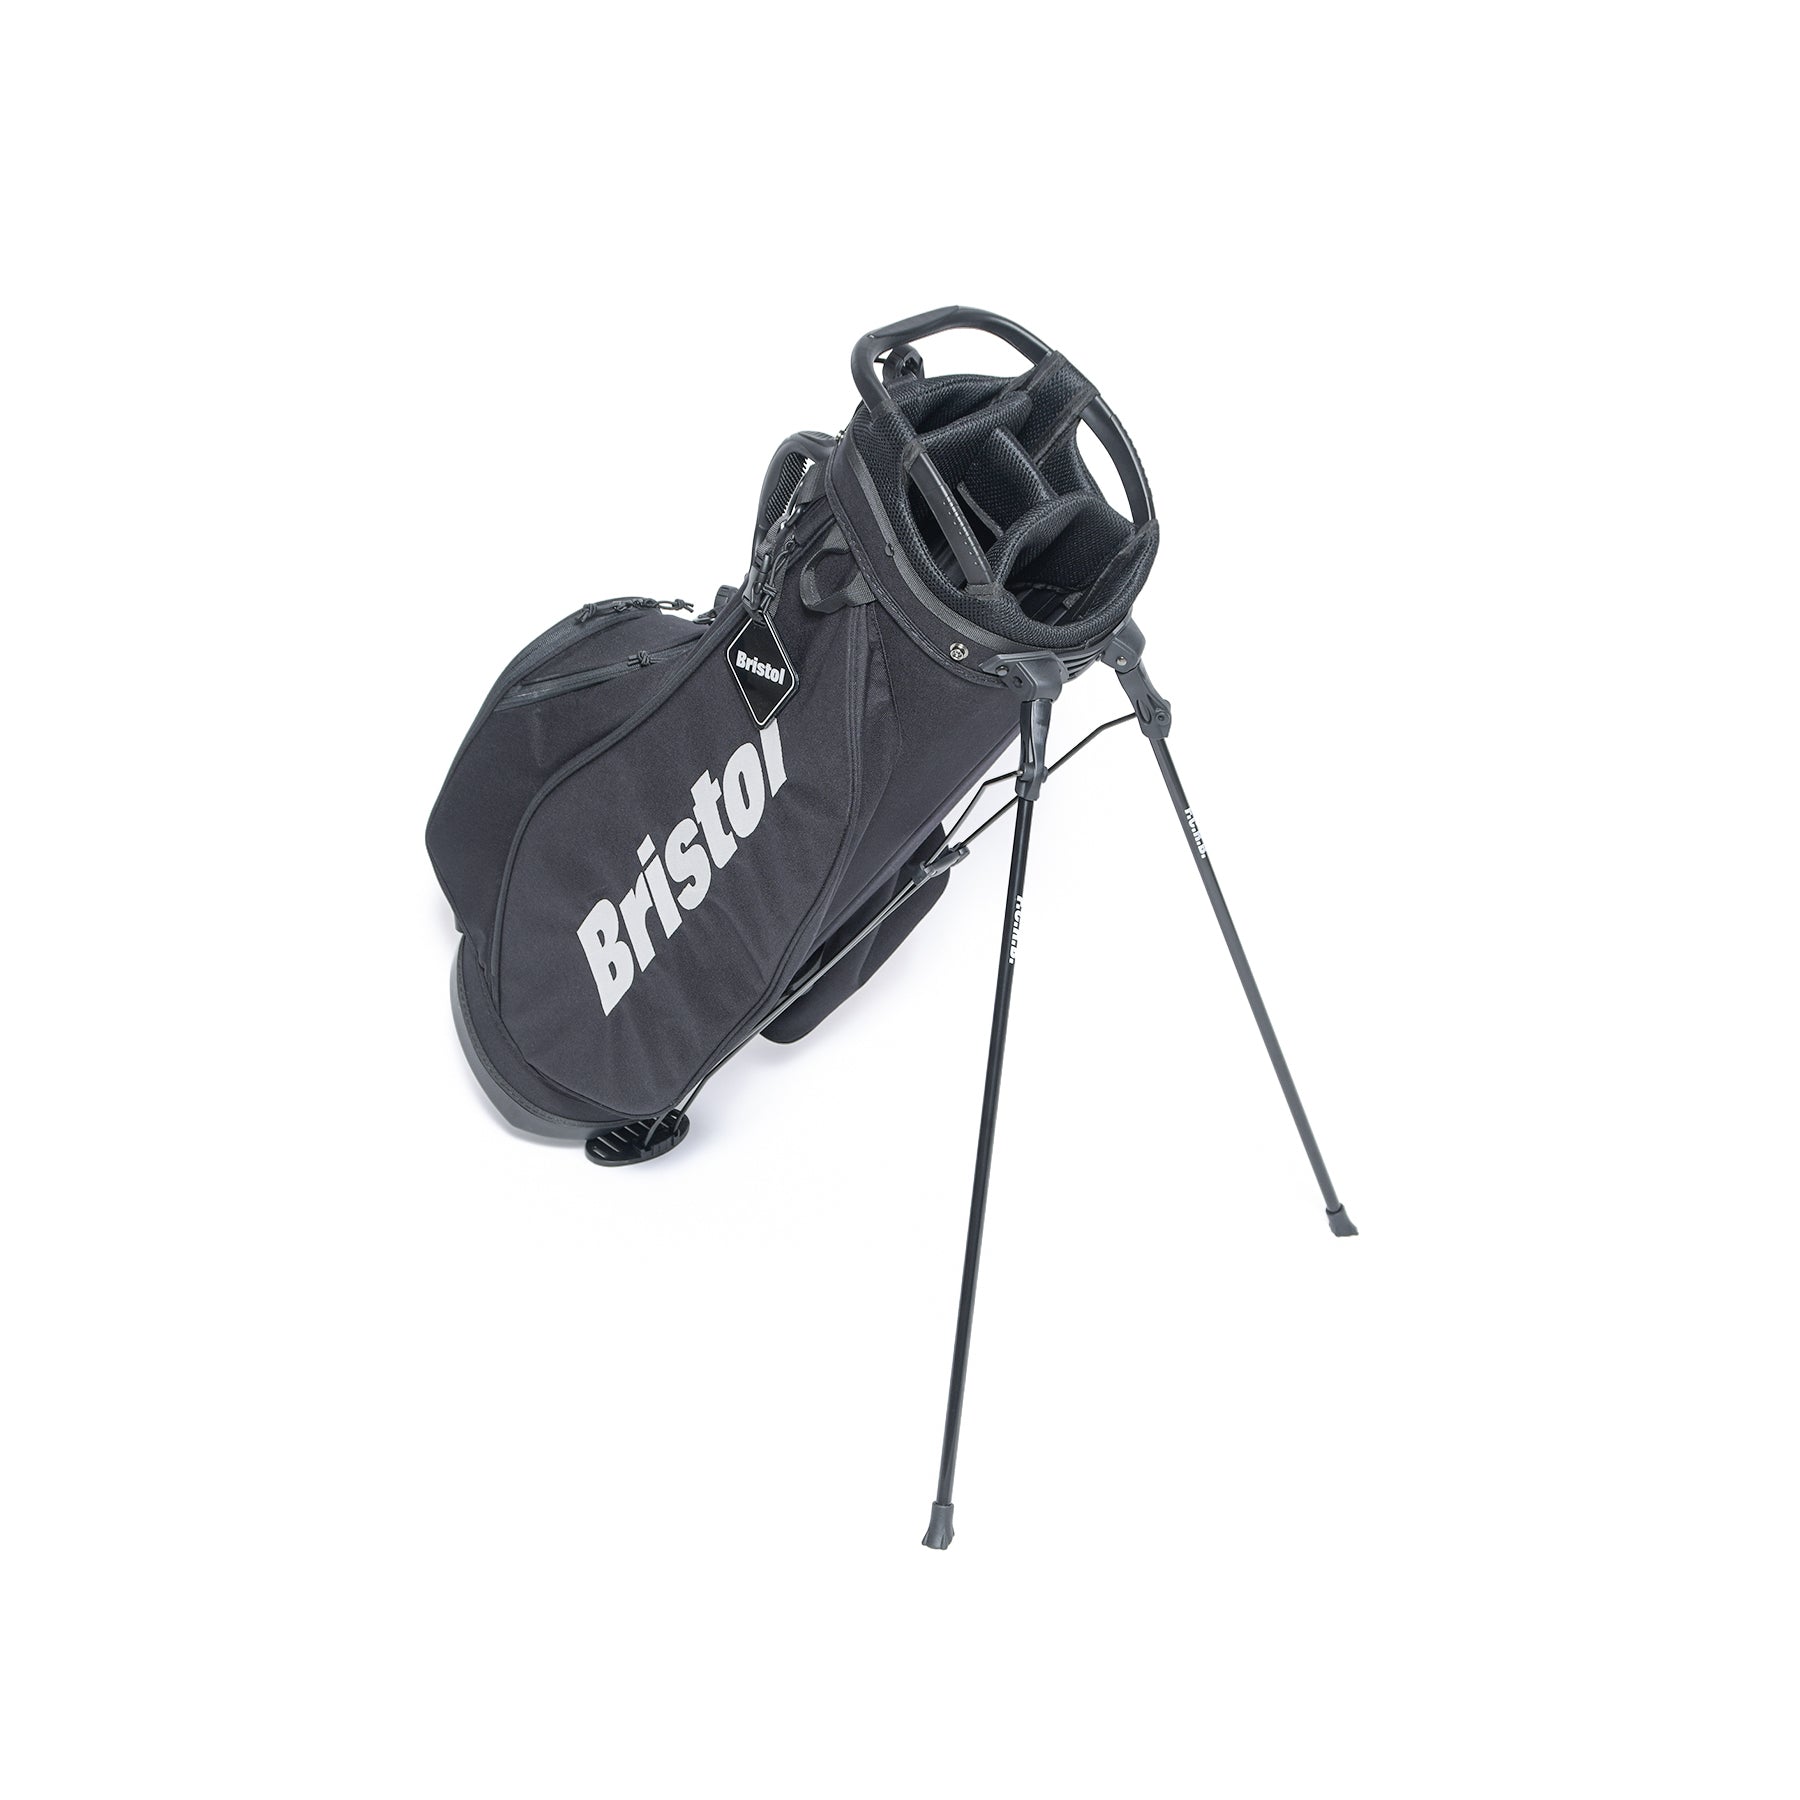 【送料無料】fcrb Bristol ゴルフバッグ golf bag 黒 新品